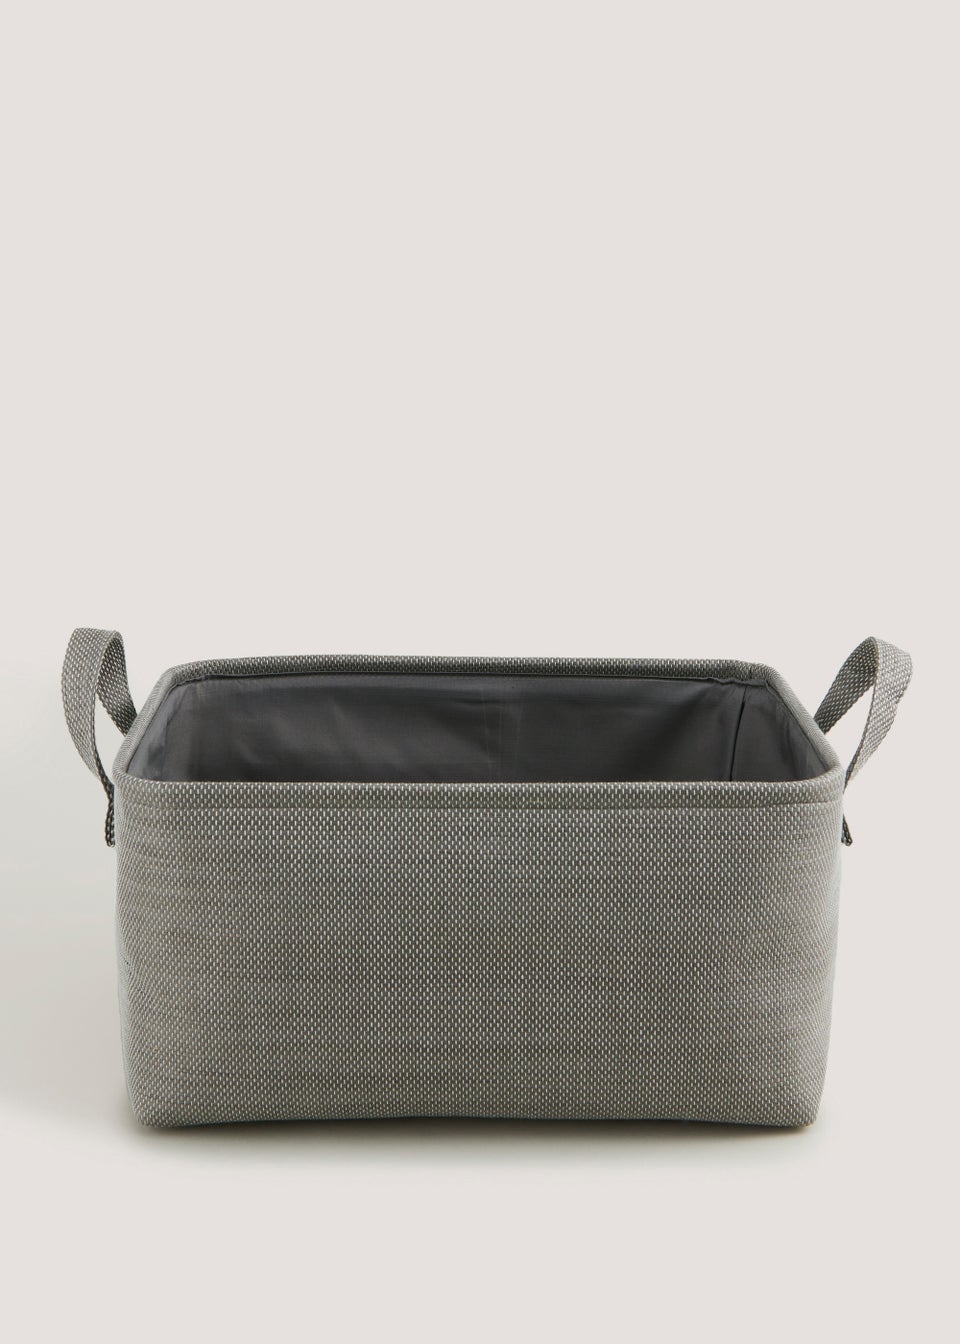 Grey Soft Storage Basket (40cm x 30cm x 20cm)